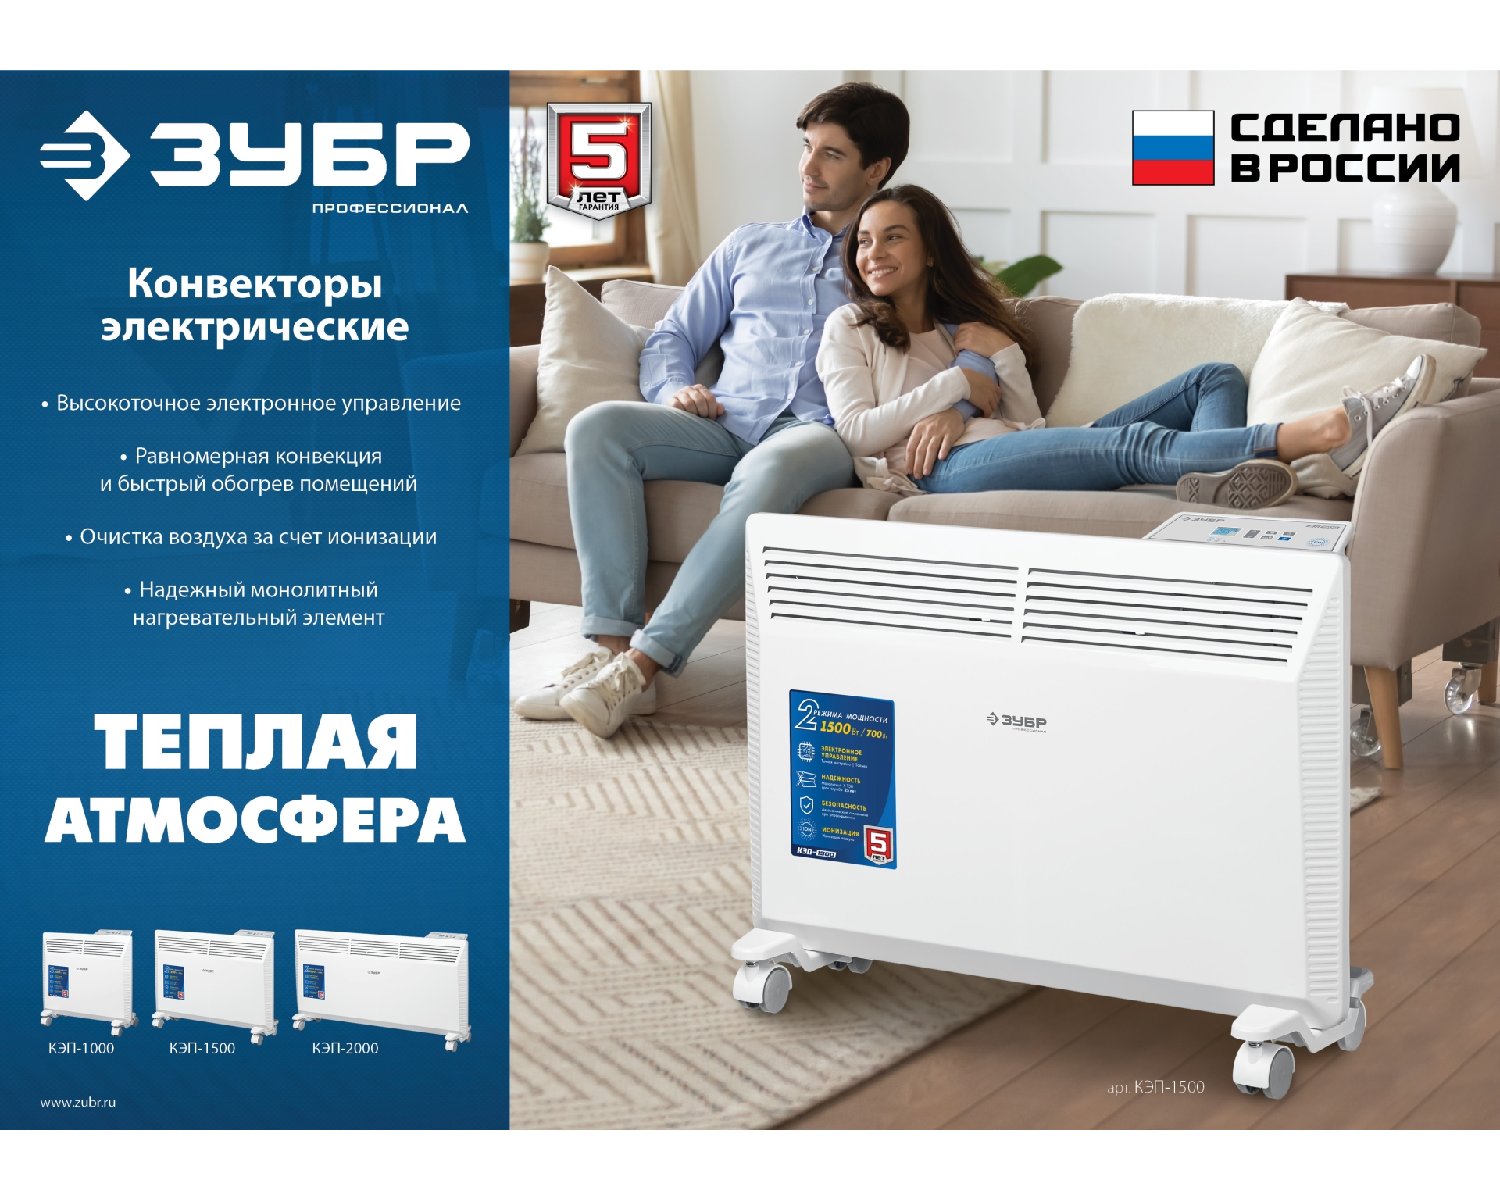 ЗУБР ПРО серия 1 кВт, электрический конвектор, Профессионал () (КЭП-1000)